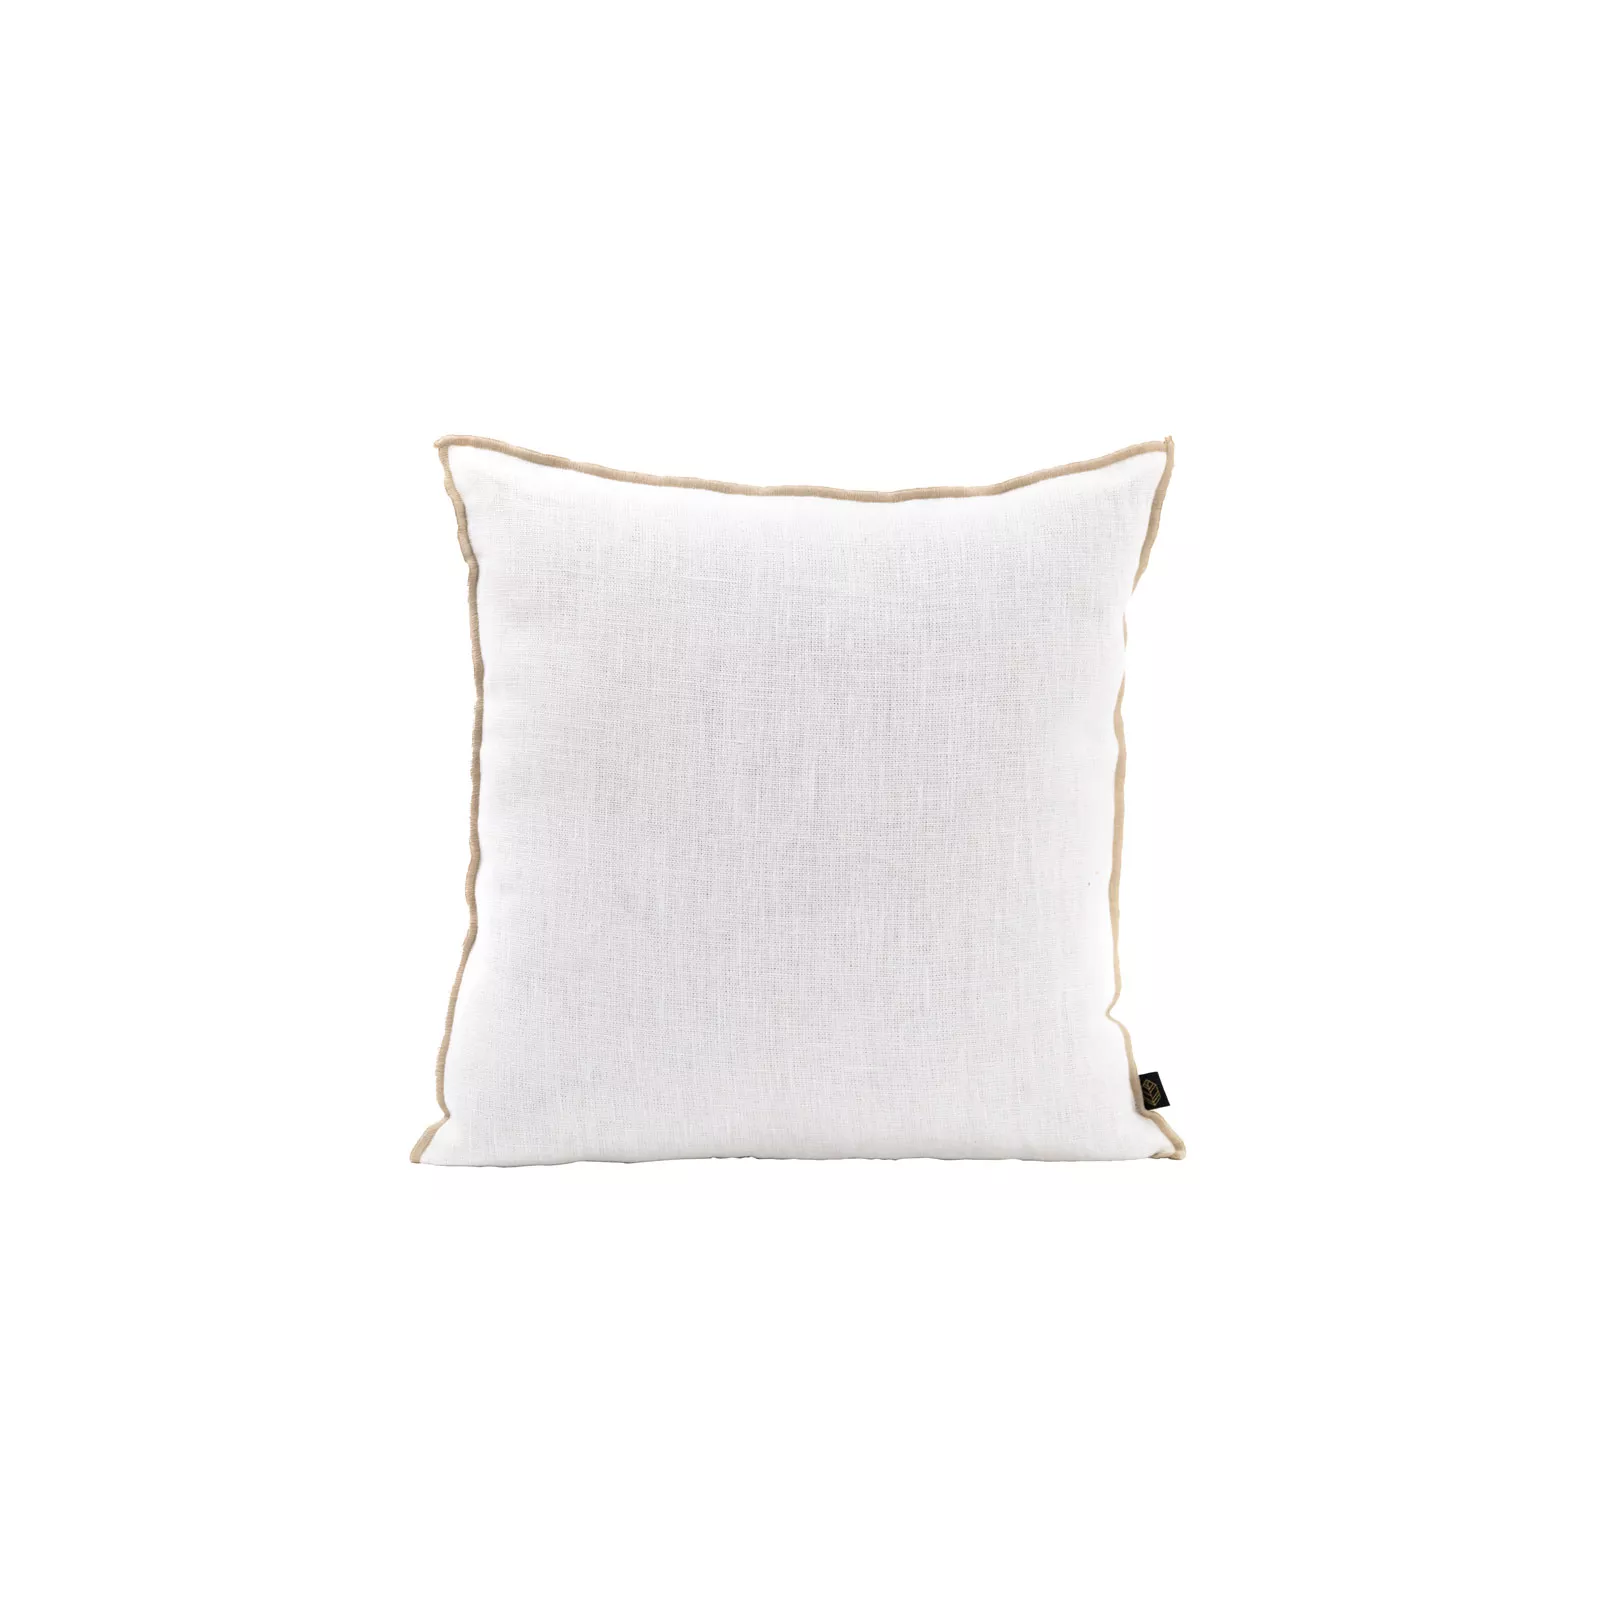 HOUSSE DE COUSSIN CHENNAI Color-WHITE Dimension-18X18 Composition-LIN - WHITE